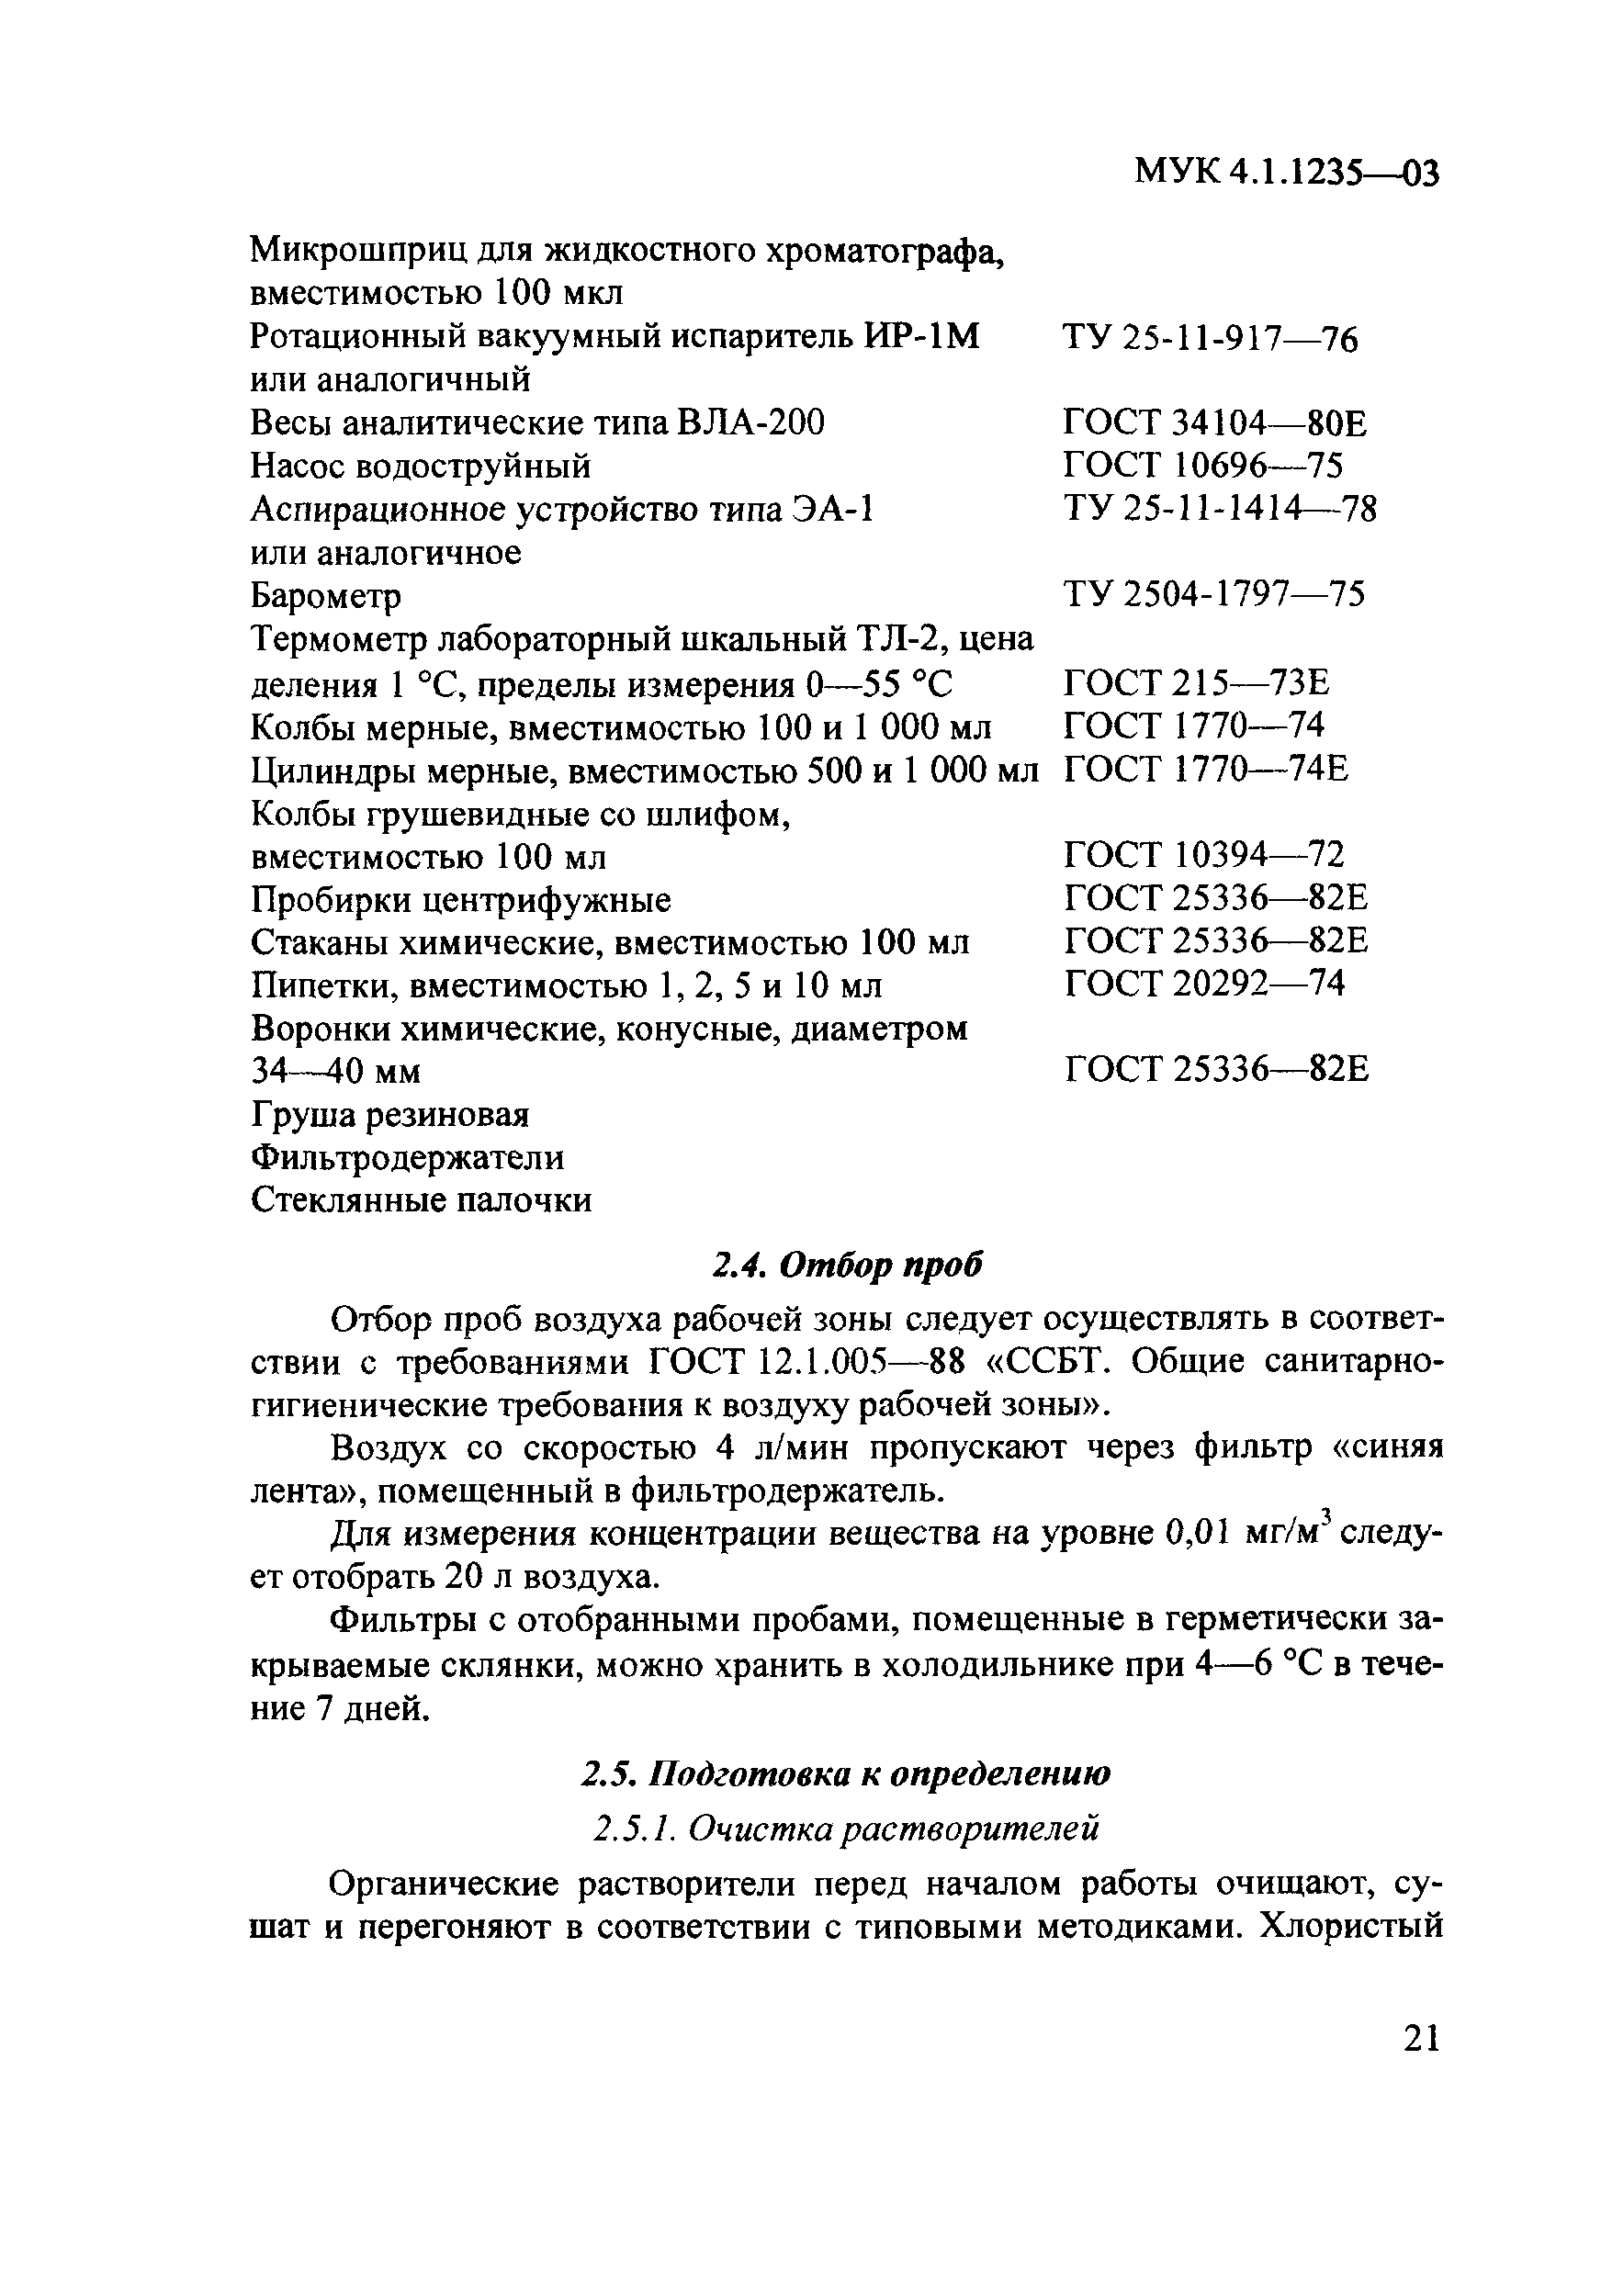 МУК 4.1.1235-03